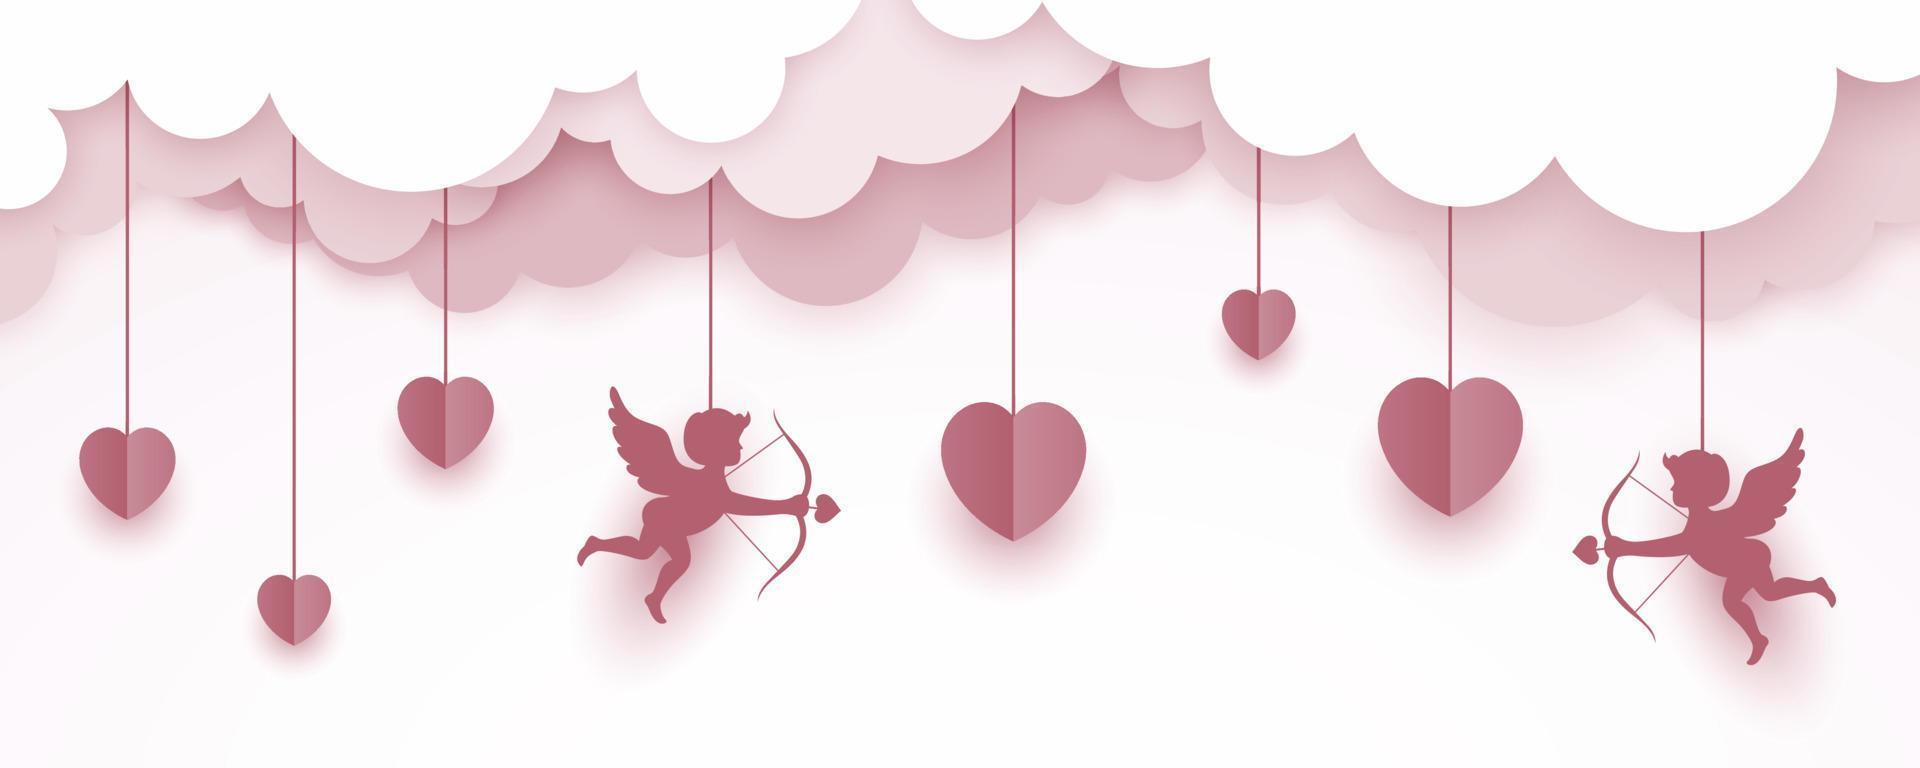 felice banner di san valentino in stile arte della carta vettore